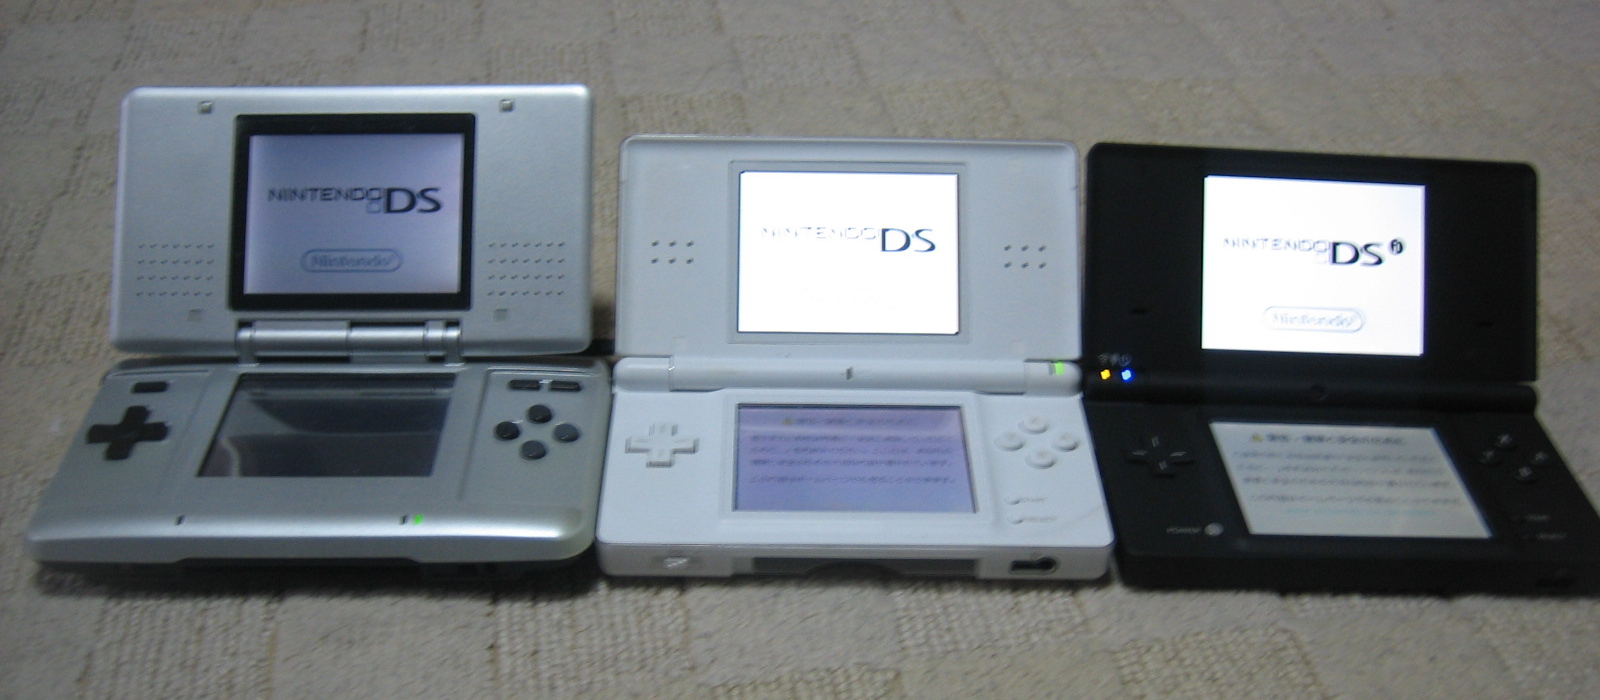 Introducing Nintendo DSi